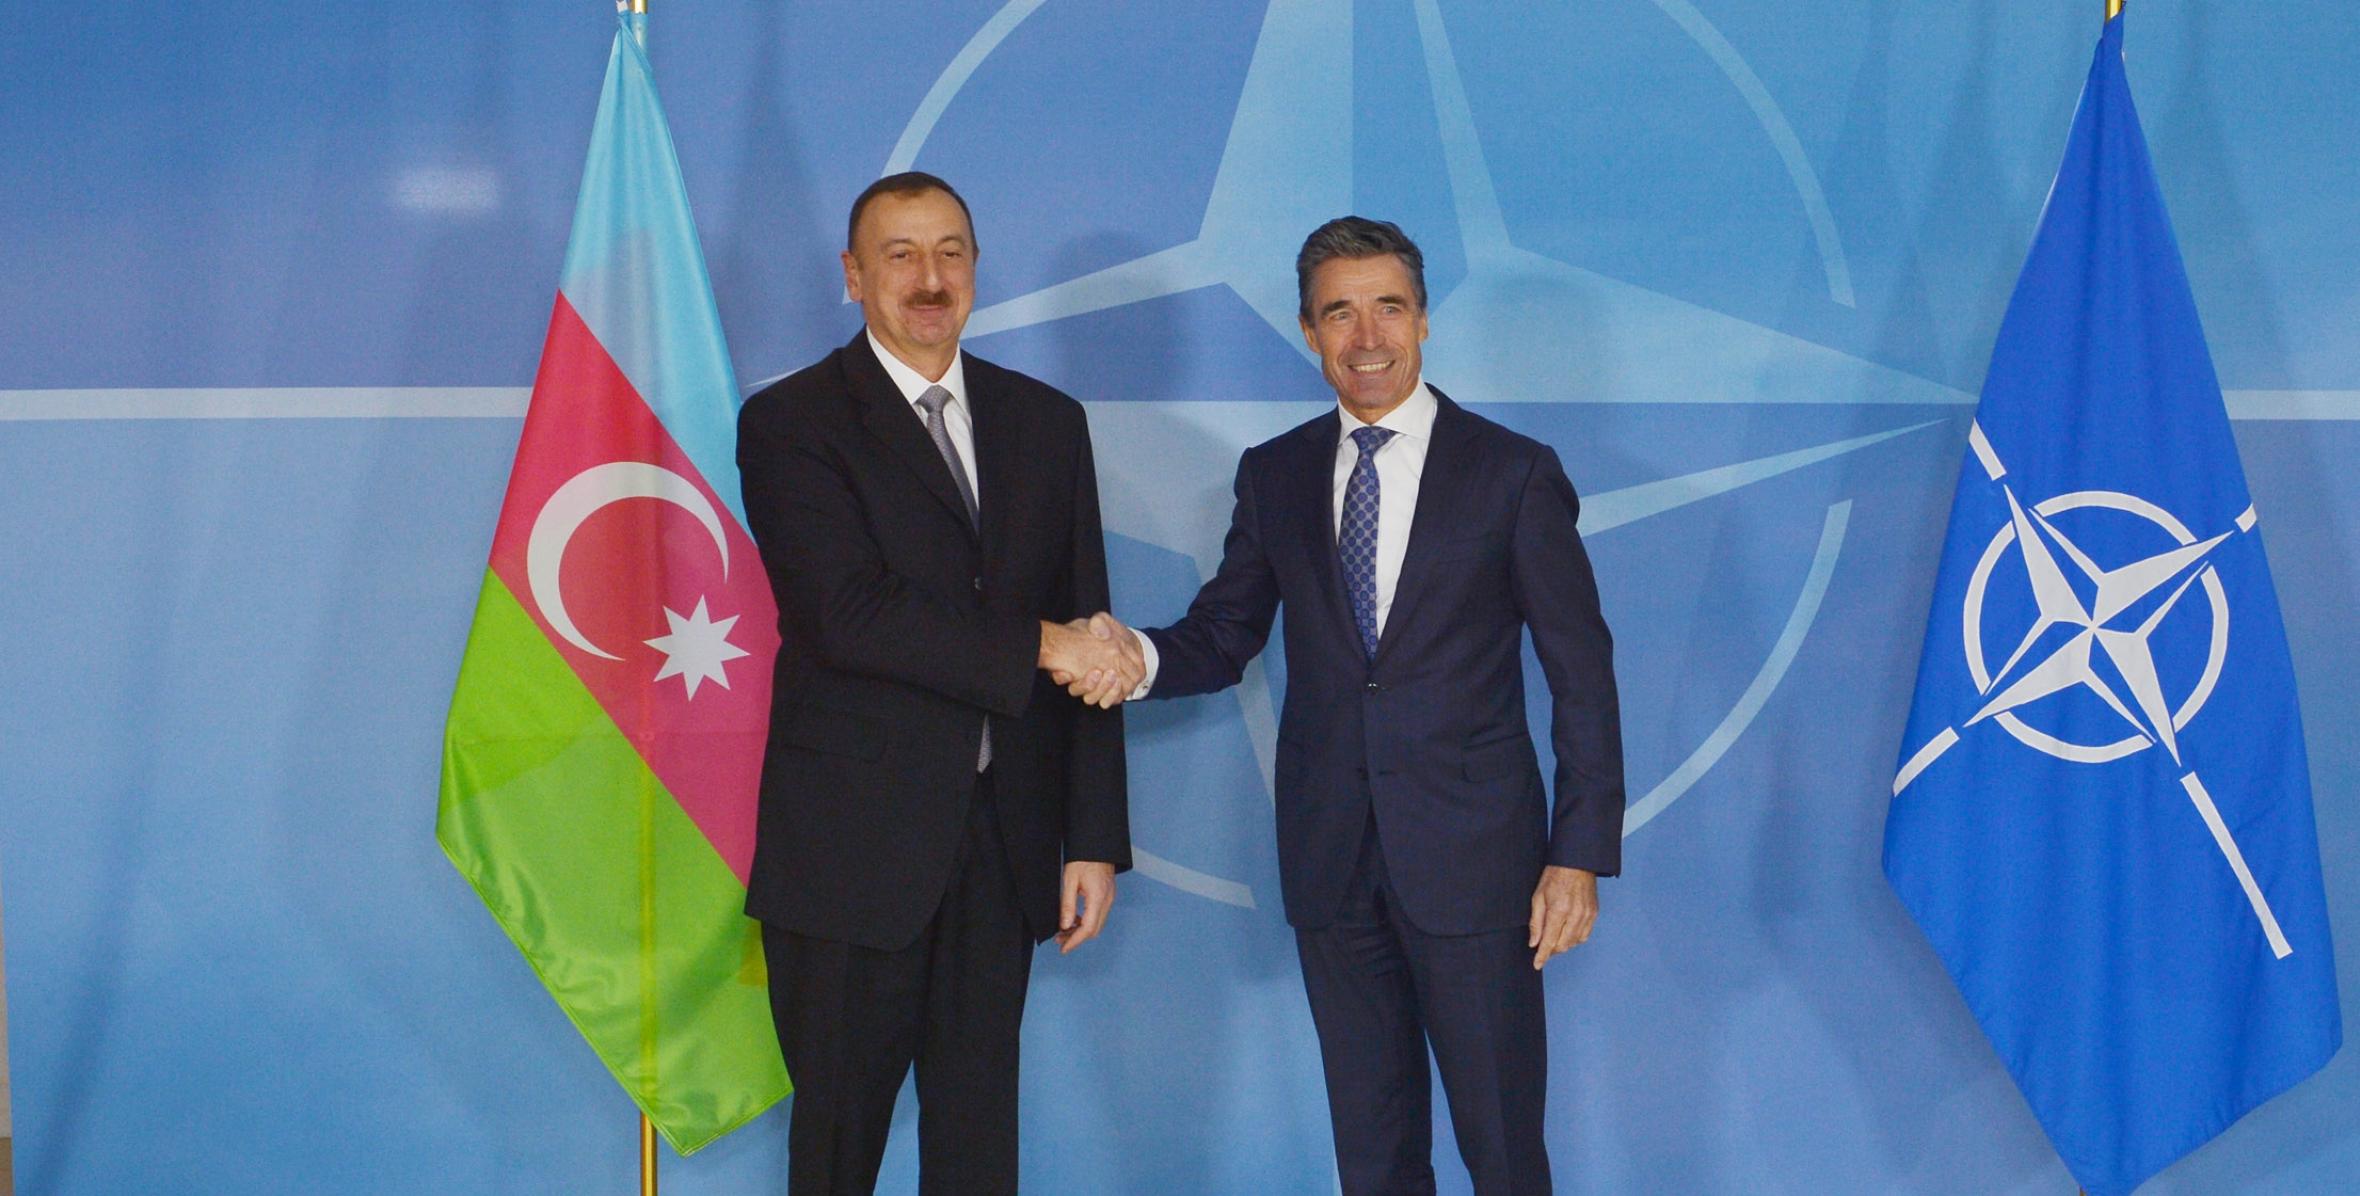 Ilham Aliyev met with NATO Secretary General Anders Fogh Rasmussen